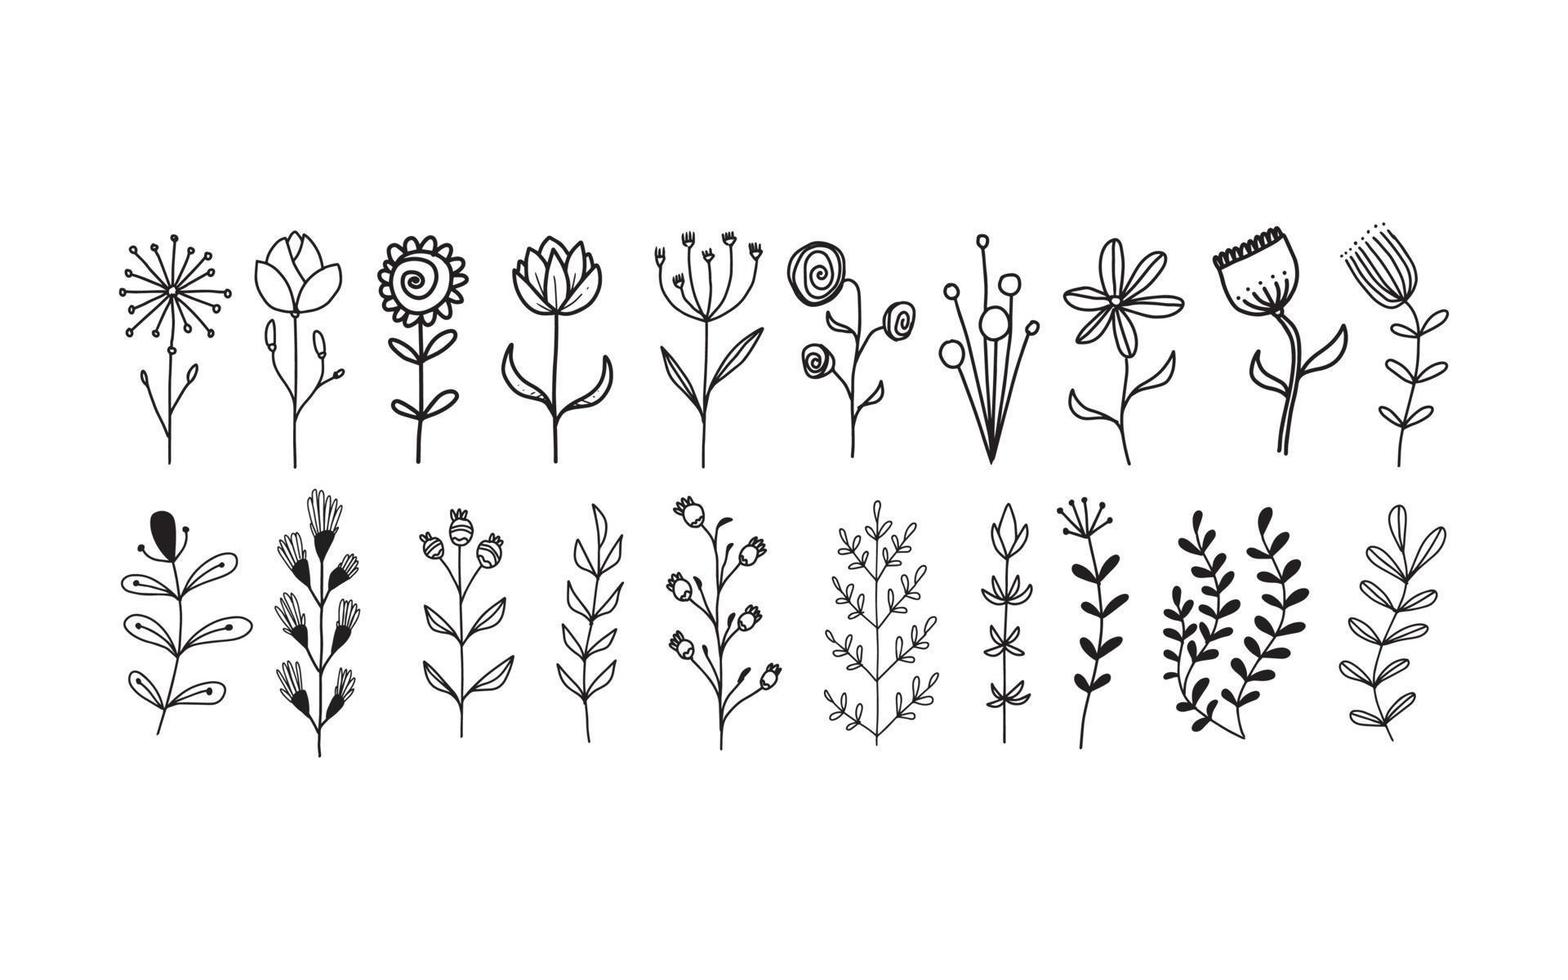 conjunto de elementos florais desenhados à mão para o seu design, ilustração de folhas e flores para criar design romântico ou vintage, gráfico isolado de plantas muito fácil de adicionar ao seu projeto de design vetor